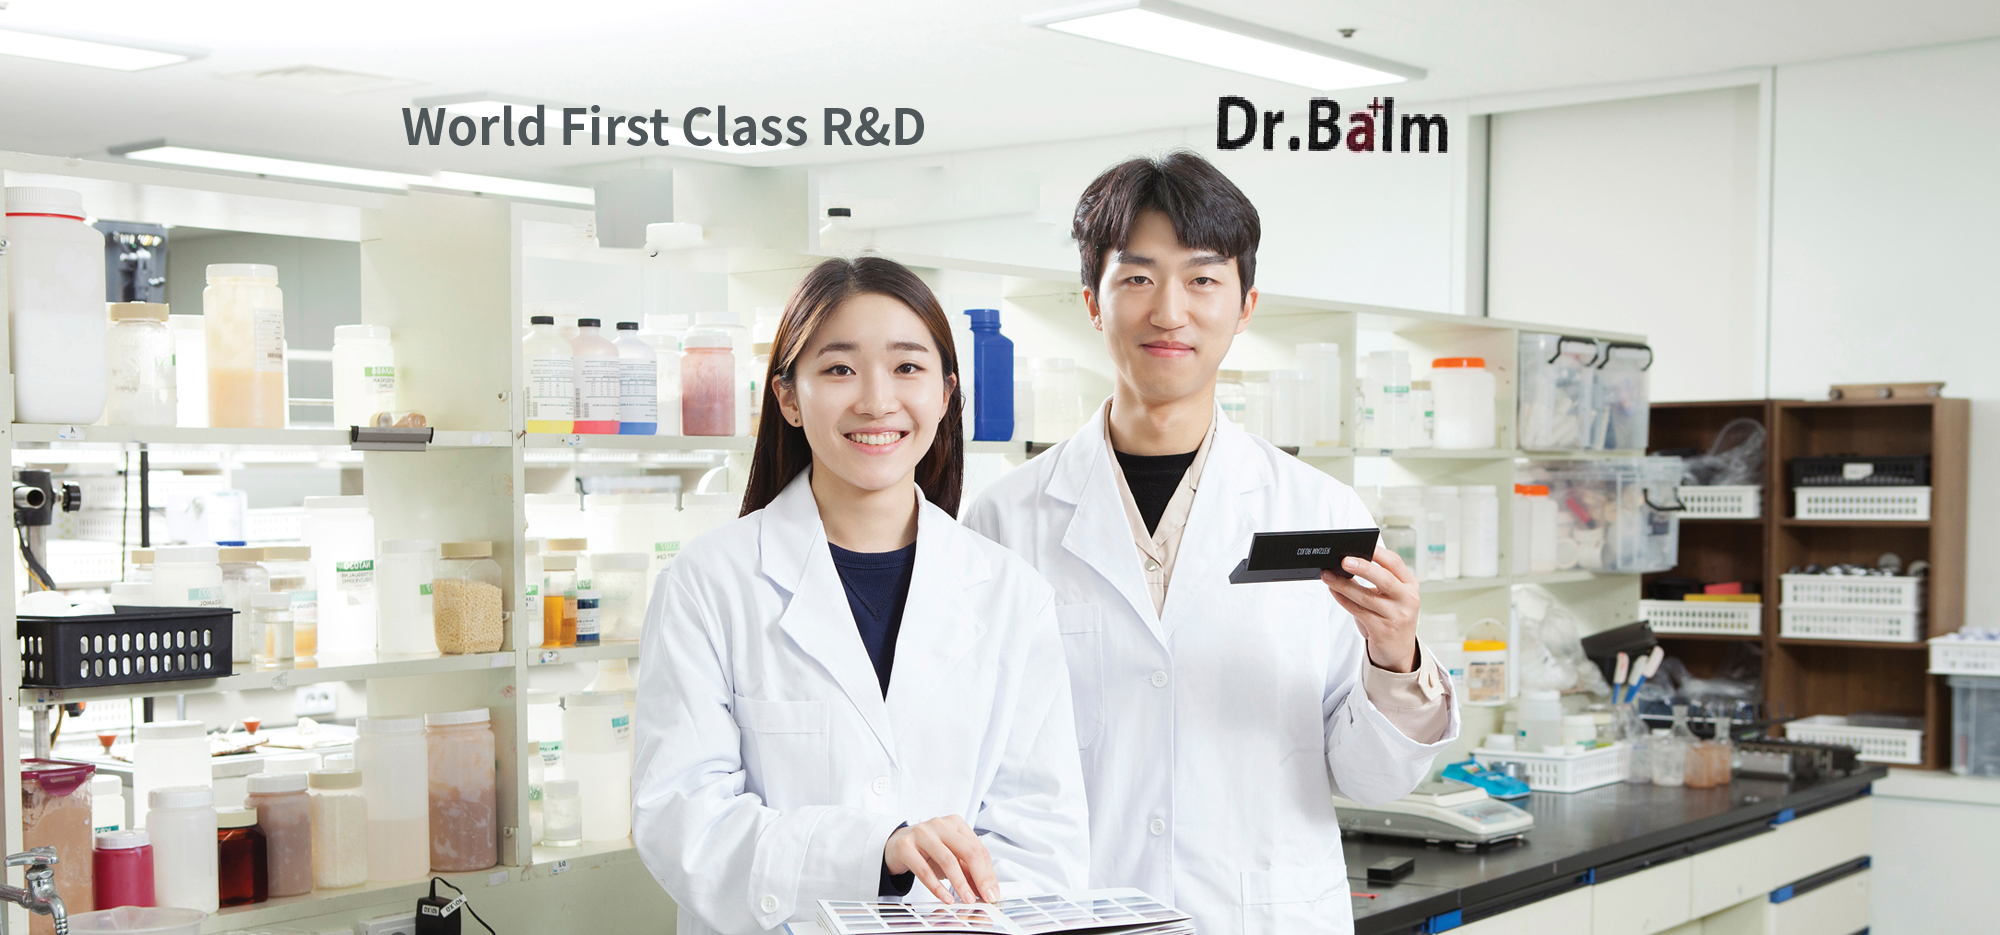 Dr.Balm - thương hiệu mỹ phẩm từ nhà sản xuất dược mỹ phẩm hàng đầu Châu Á